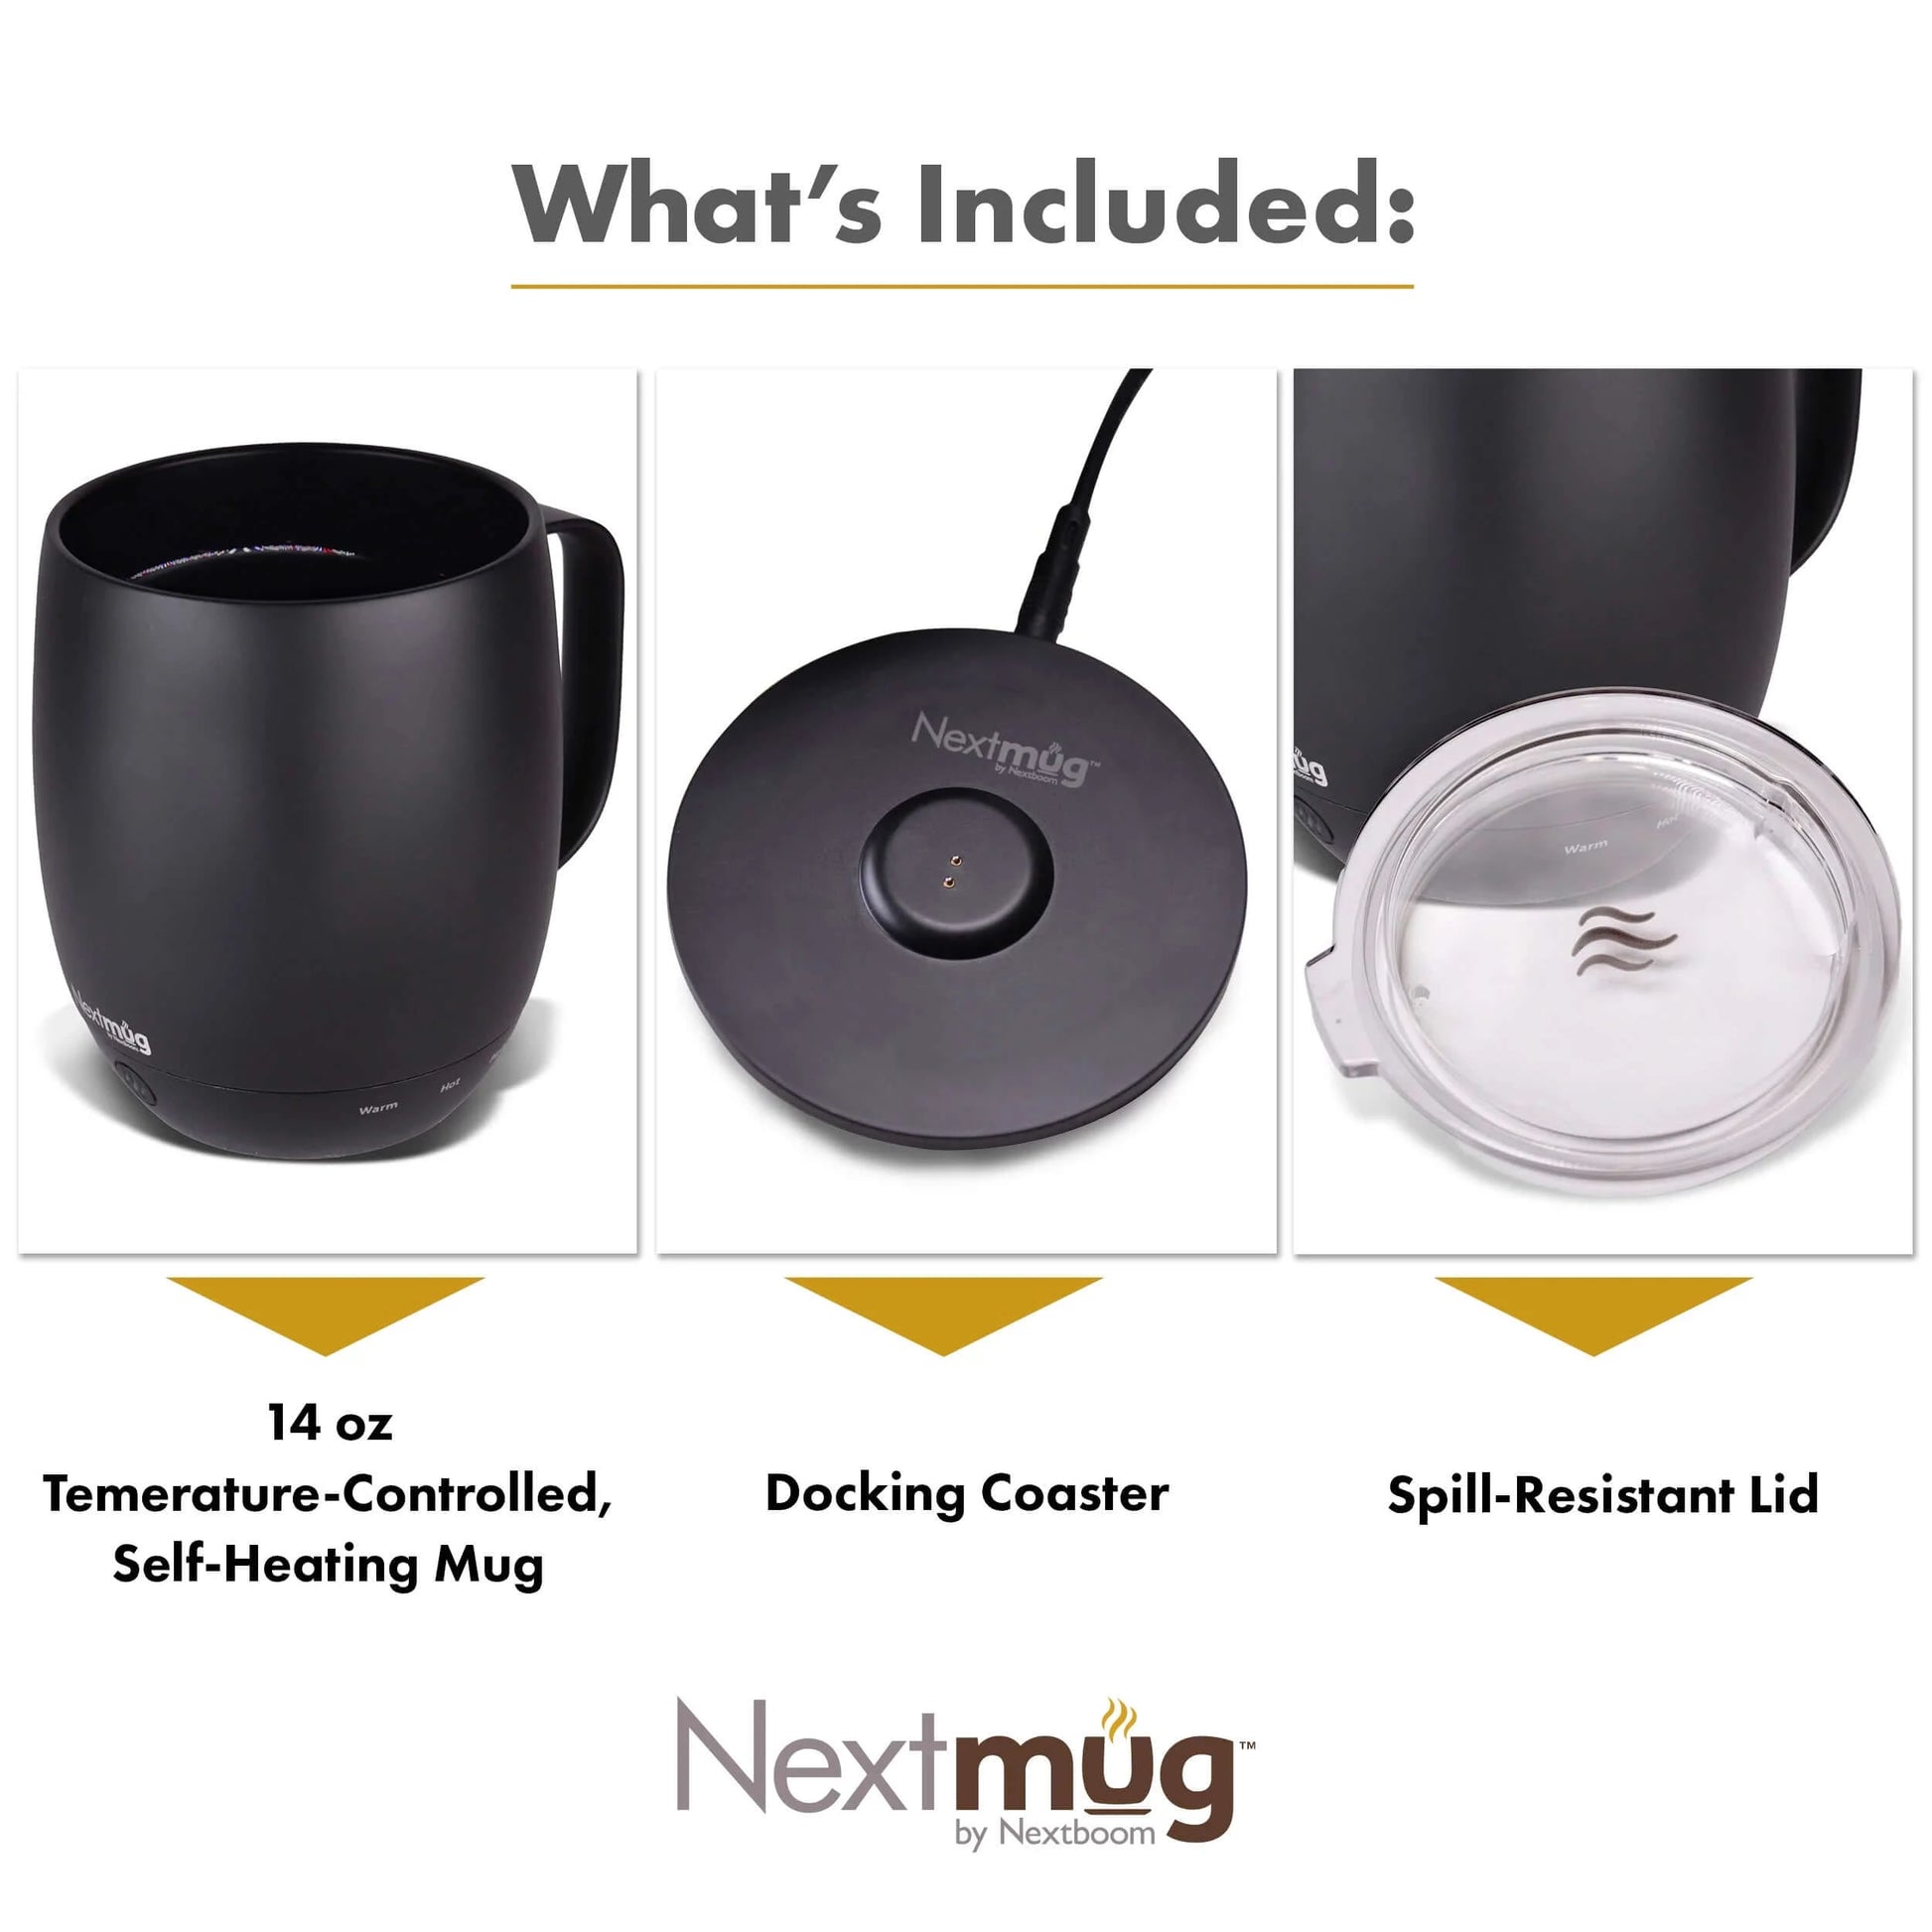 EMBER Mug 2. 14oz Temperature Control Smart Mug. Slate Grey. NEW